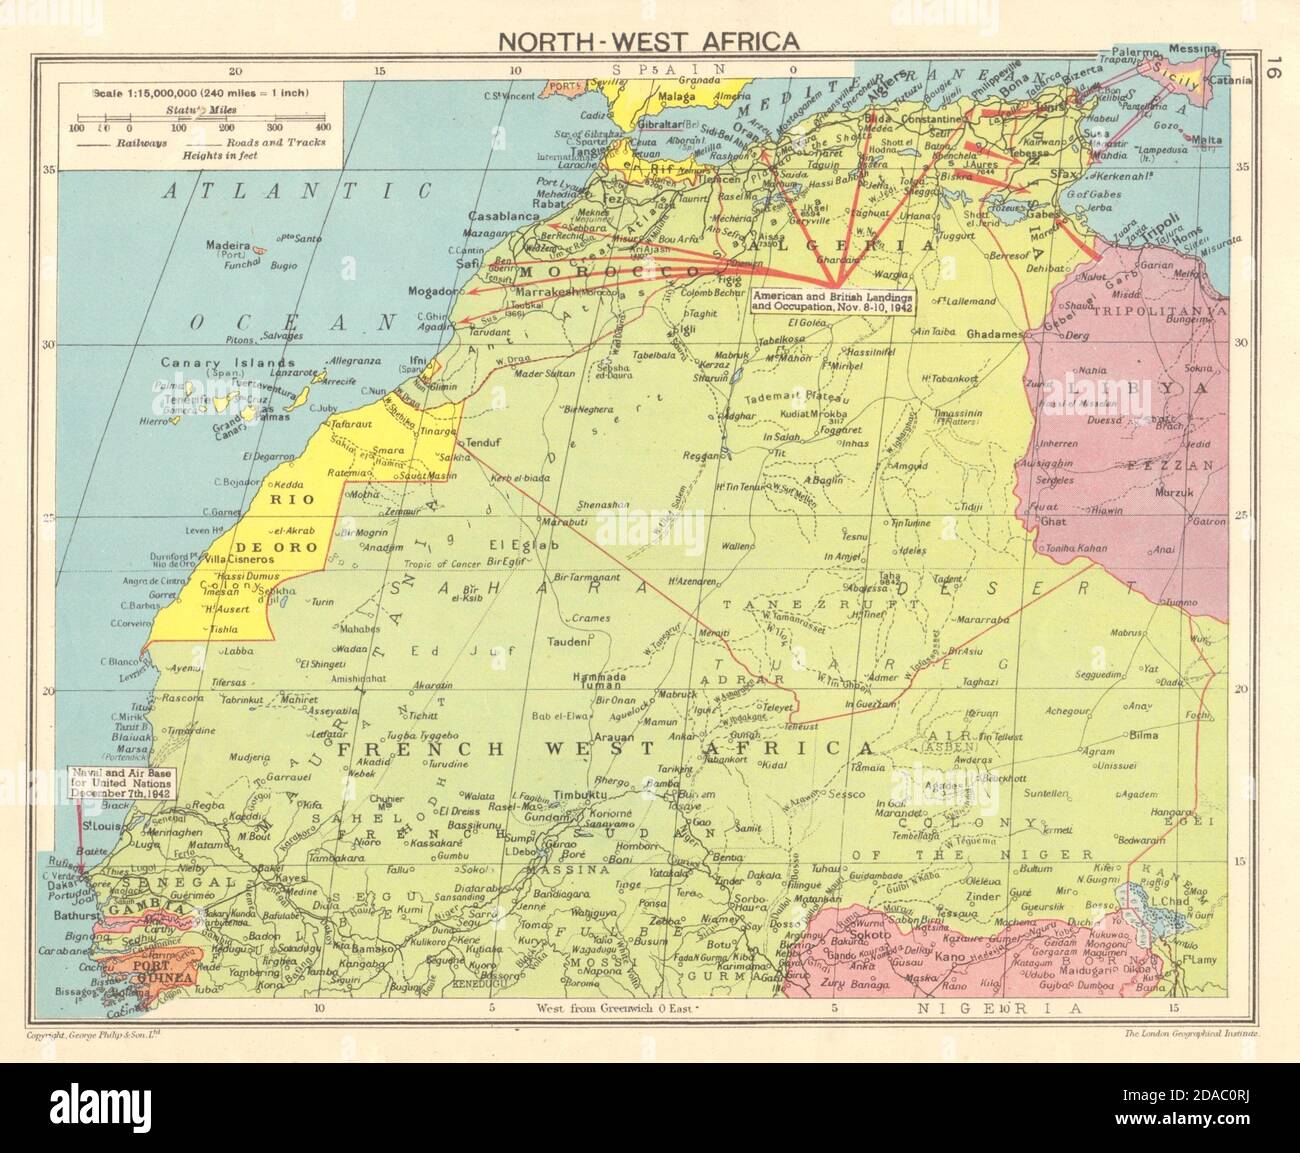 WORLD WAR 2 North-west Africa. Operation Torch landings. Dakar Air base 1943 map Stock Photo